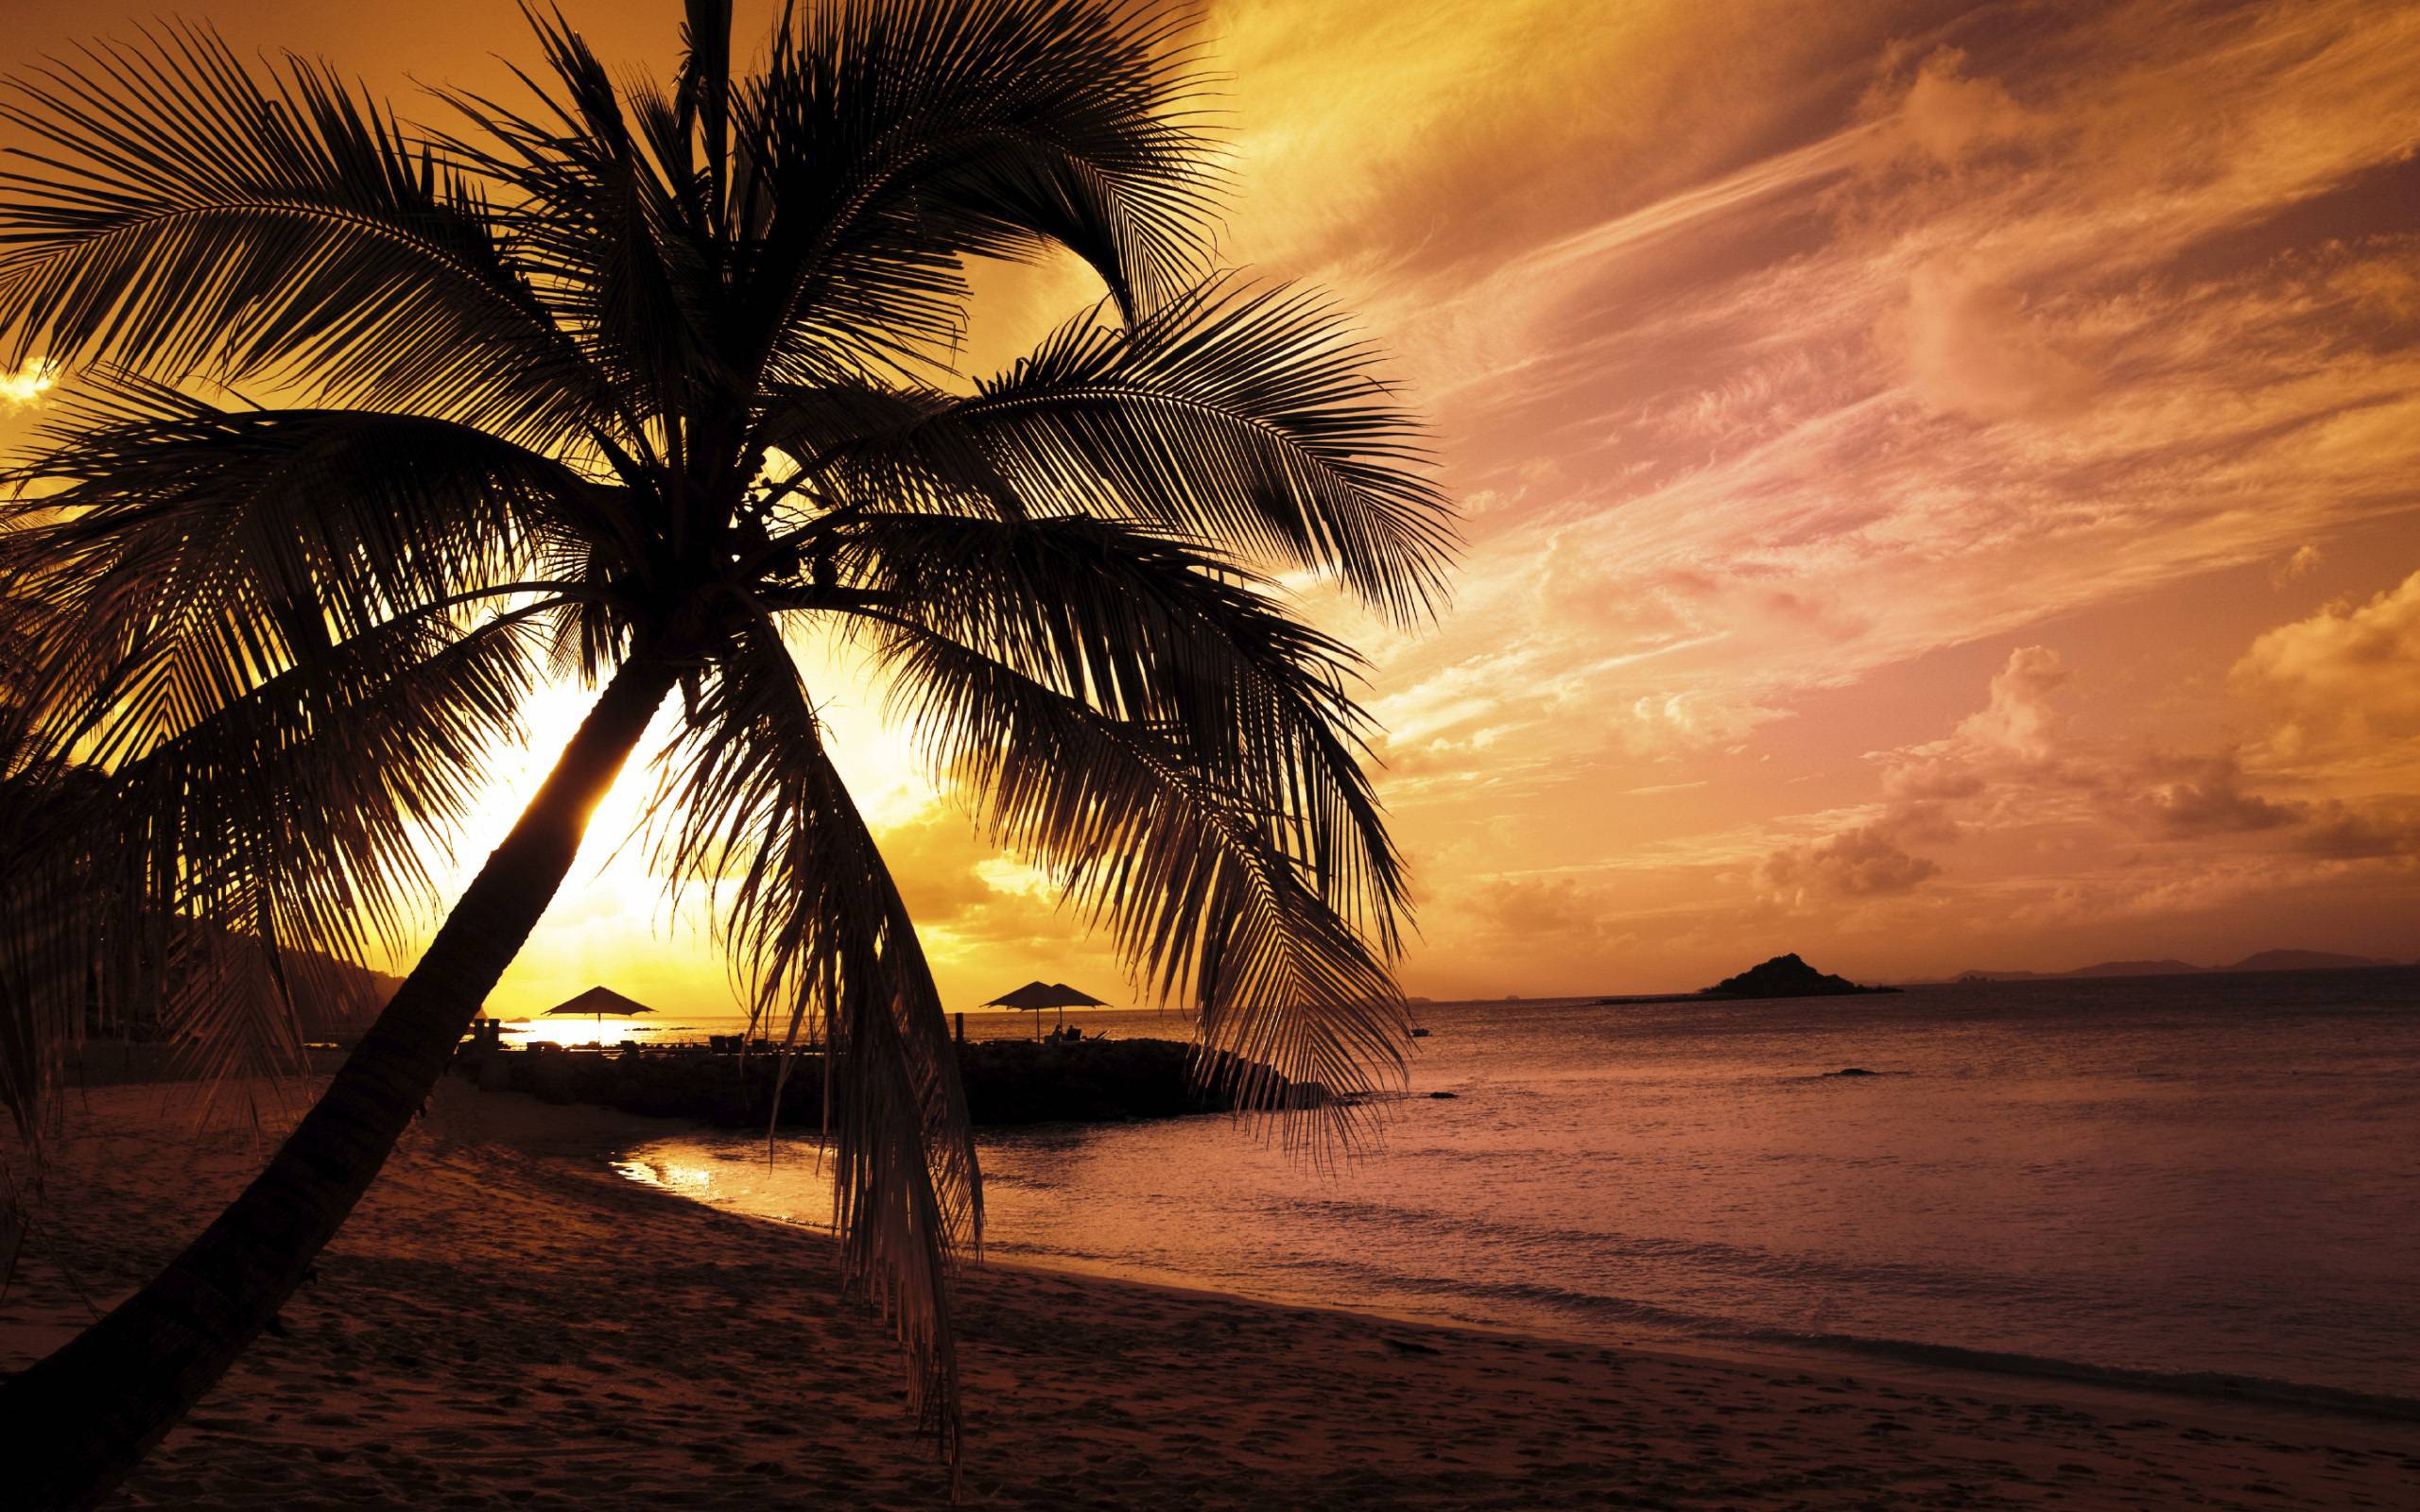 Beach Palm Tree Sunset 21503 HD Wallpaper in Beach n Tropical